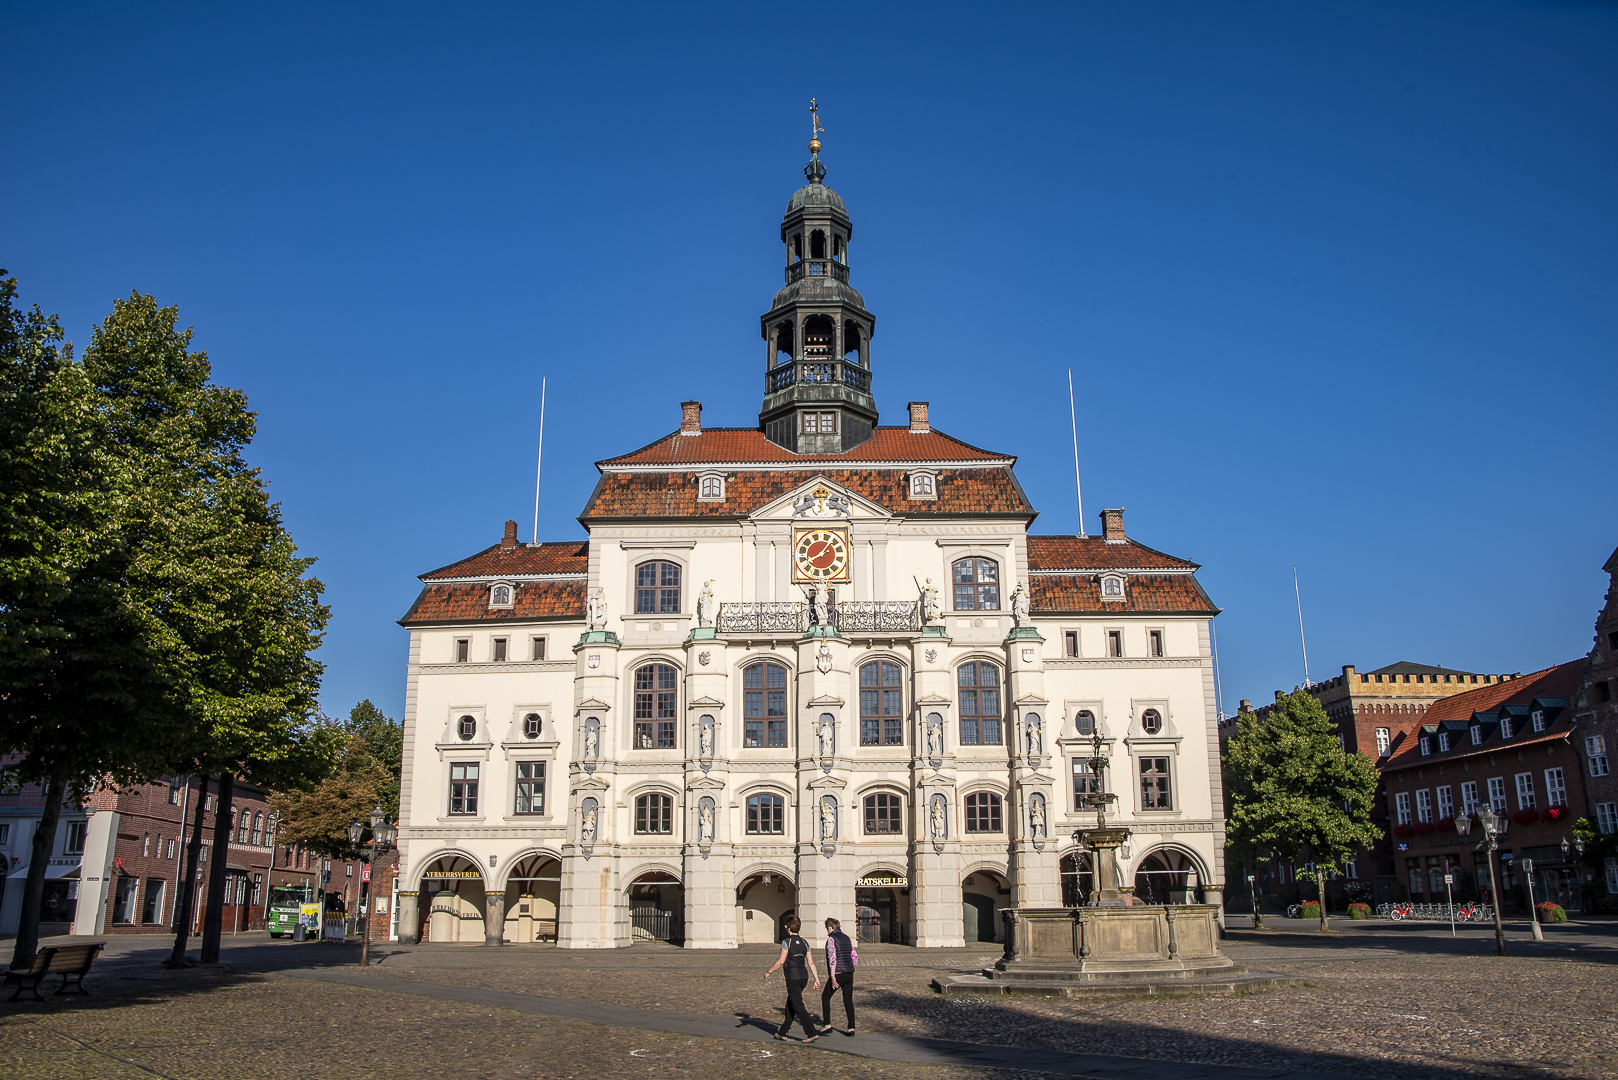 Marktplatz mit Rathaus in Lüneburg